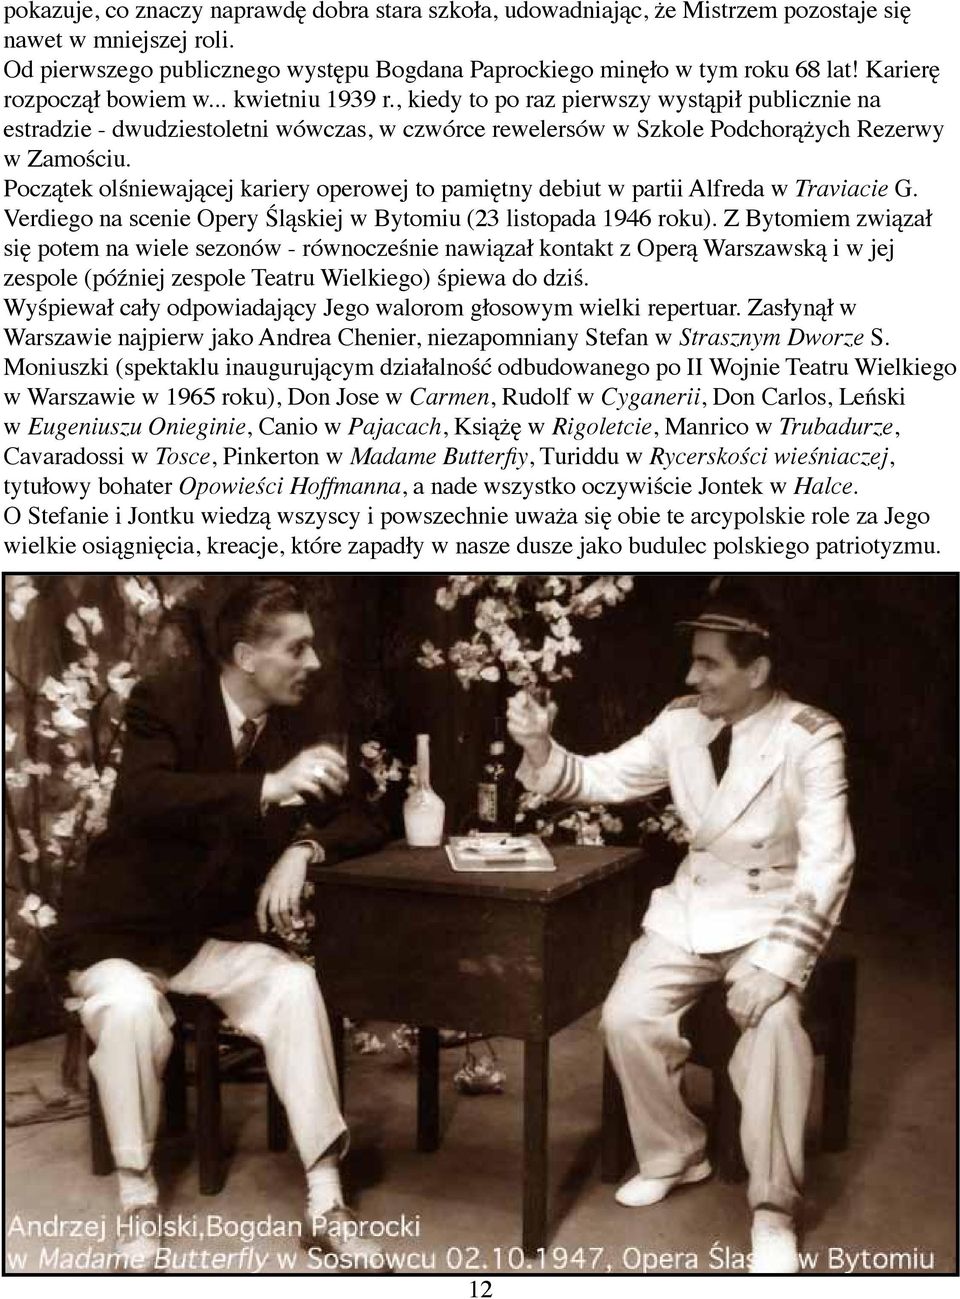 Początek olśniewającej kariery operowej to pamiętny debiut w partii Alfreda w Traviacie G. Verdiego na scenie Opery Śląskiej w Bytomiu (23 listopada 1946 roku).